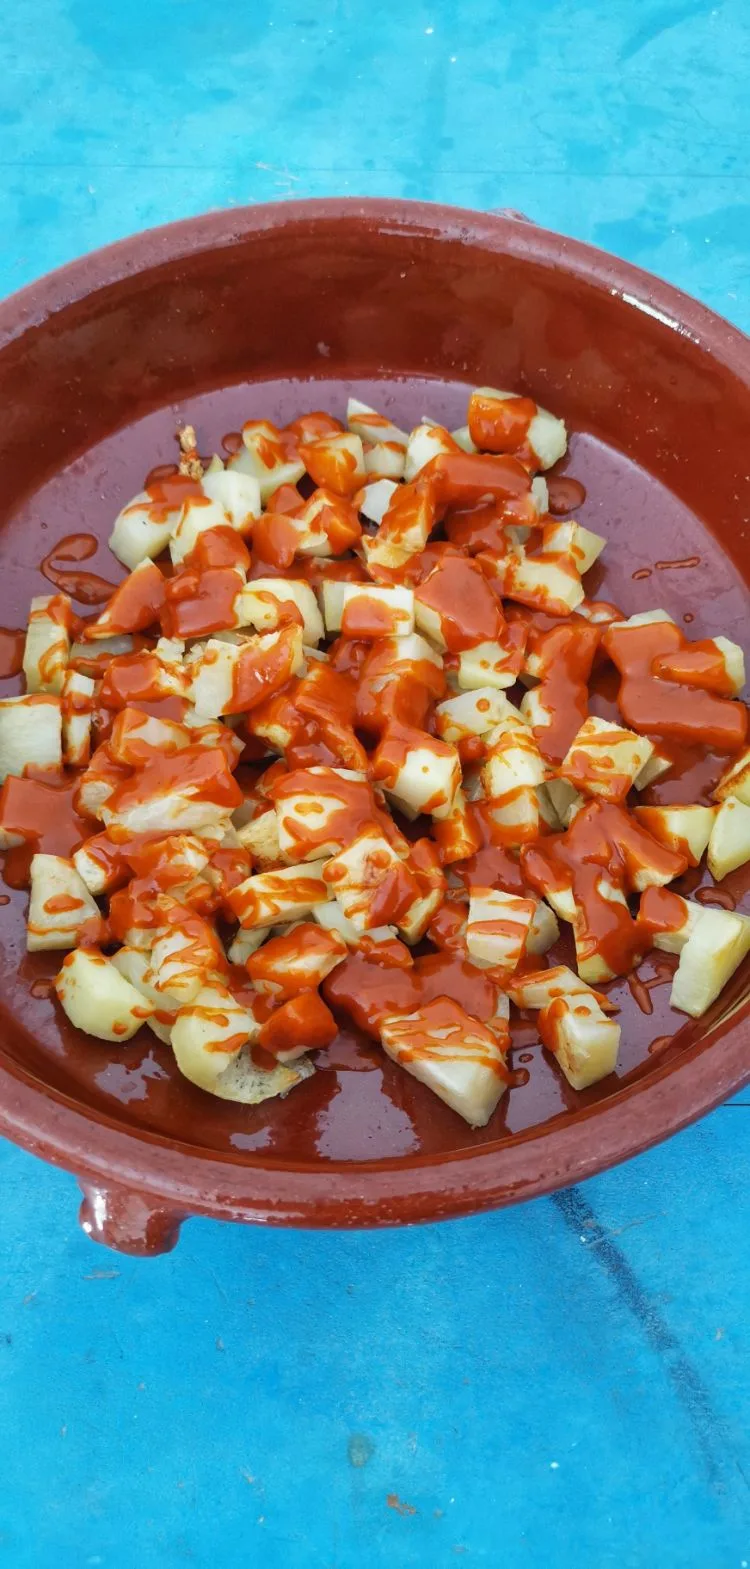 Spanish Patatas Bravas Recipe Spanish Fried Potatoes with Spicy Sauce3